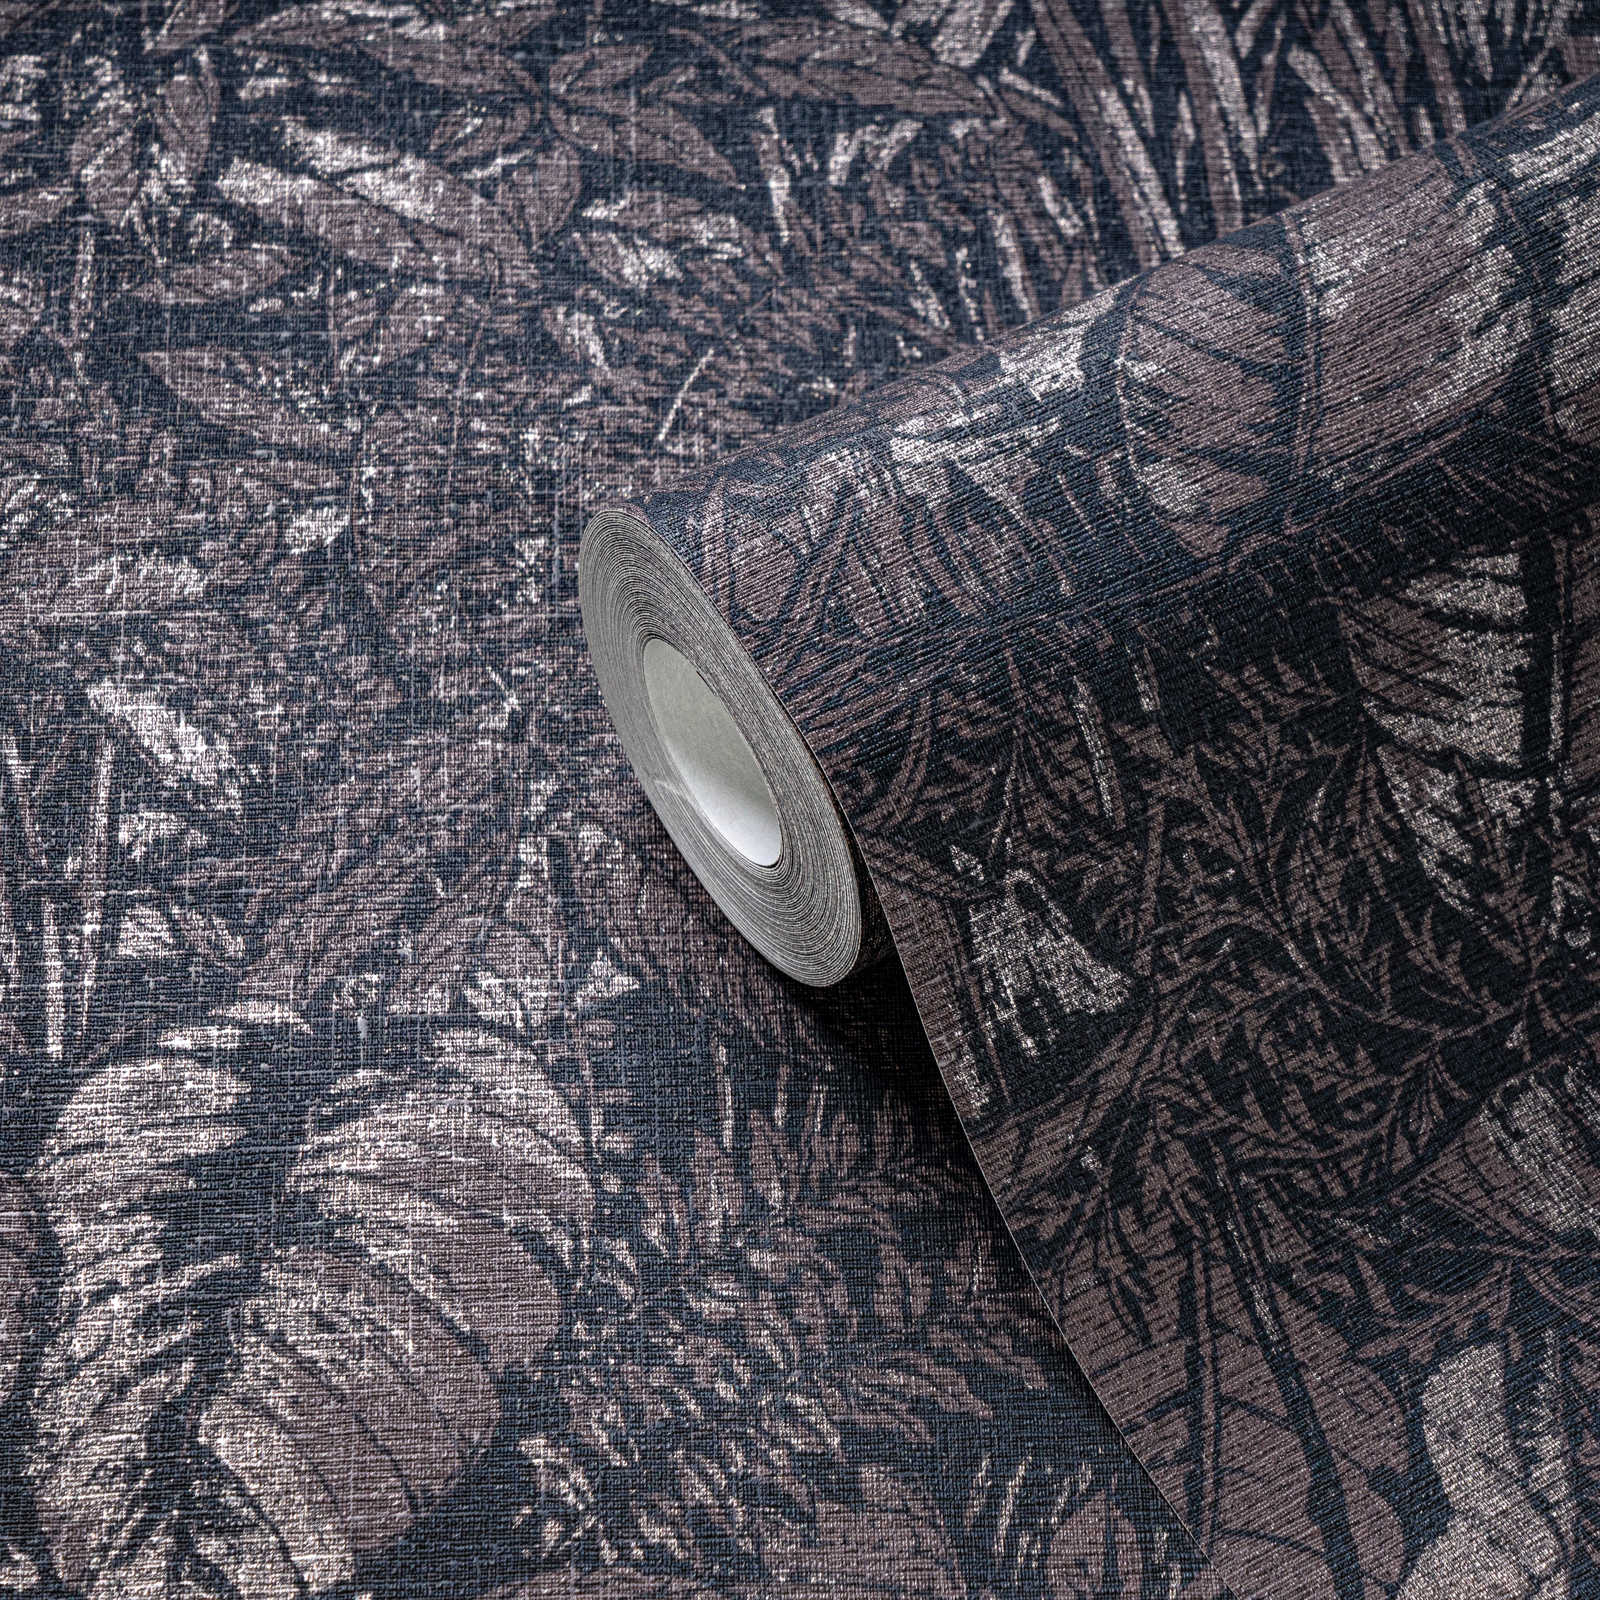             Papel pintado Selva claro brillante con motivo de hojas - marrón, negro, plata
        